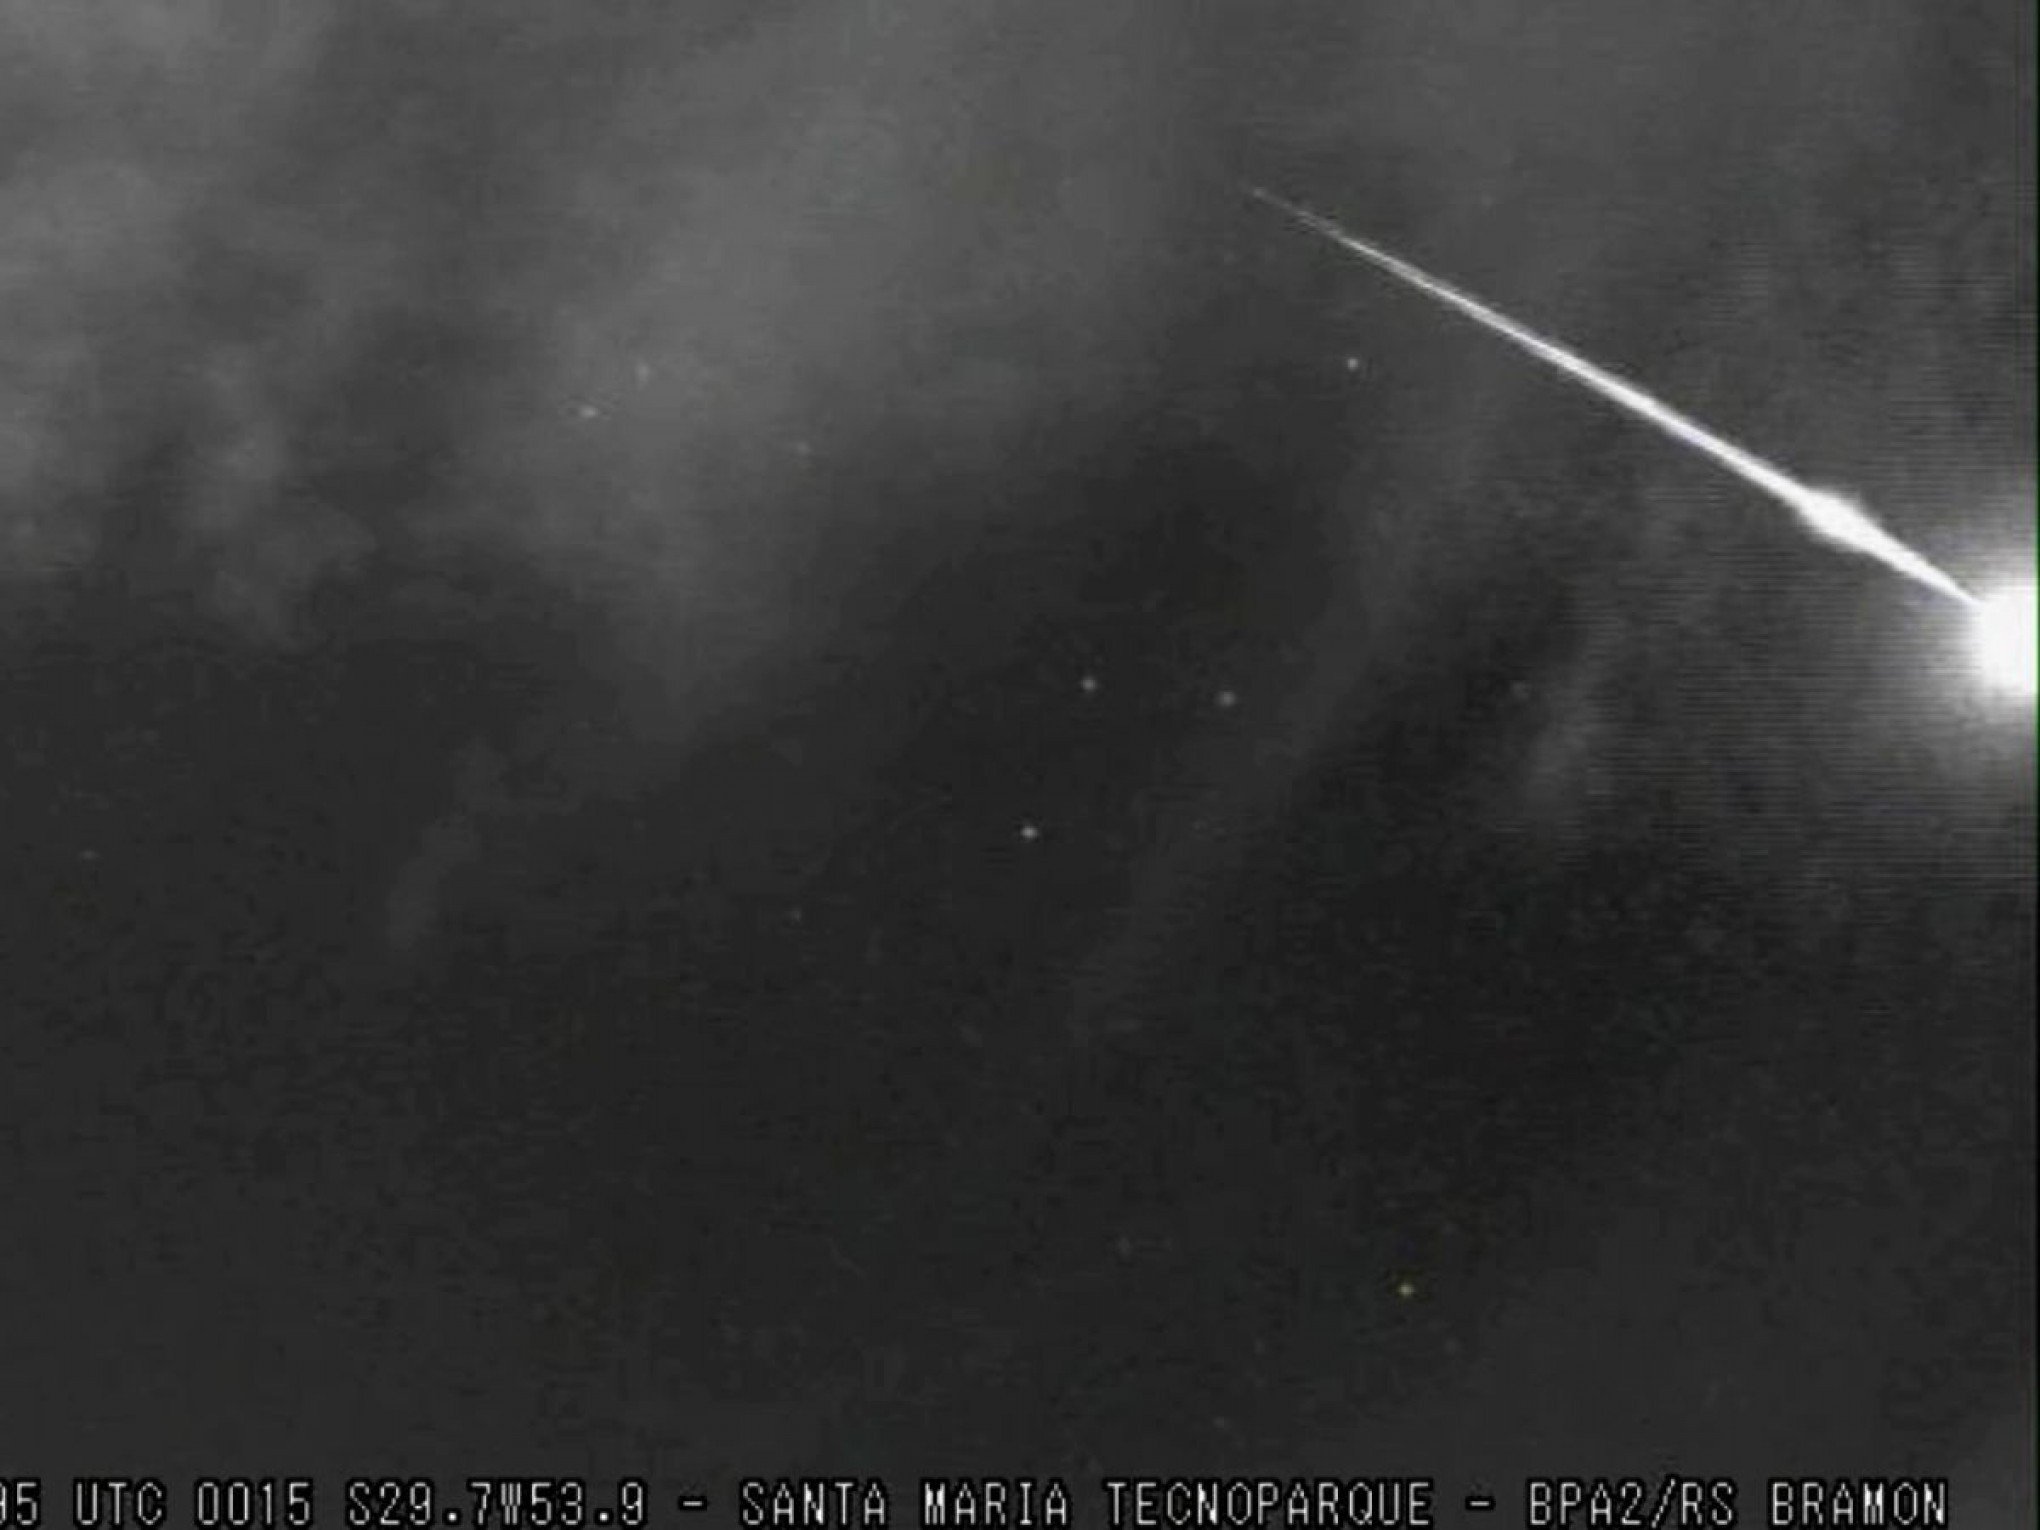 VÍDEO: Meteoro explosivo se desintegra completamente no céu de Santa Maria